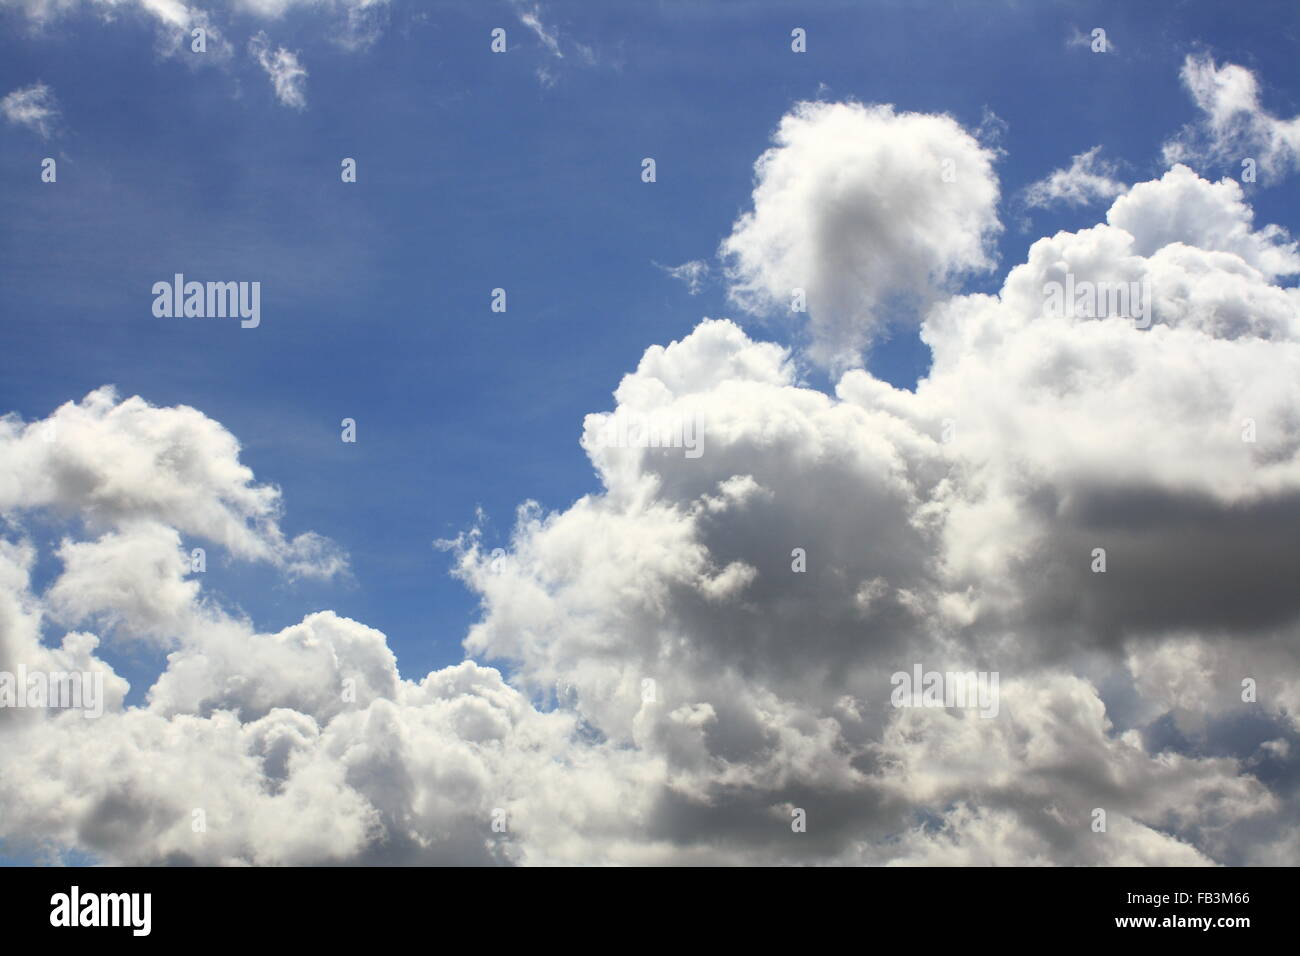 Résumé fond de ciel bleu et nuages blancs durant la journée Banque D'Images